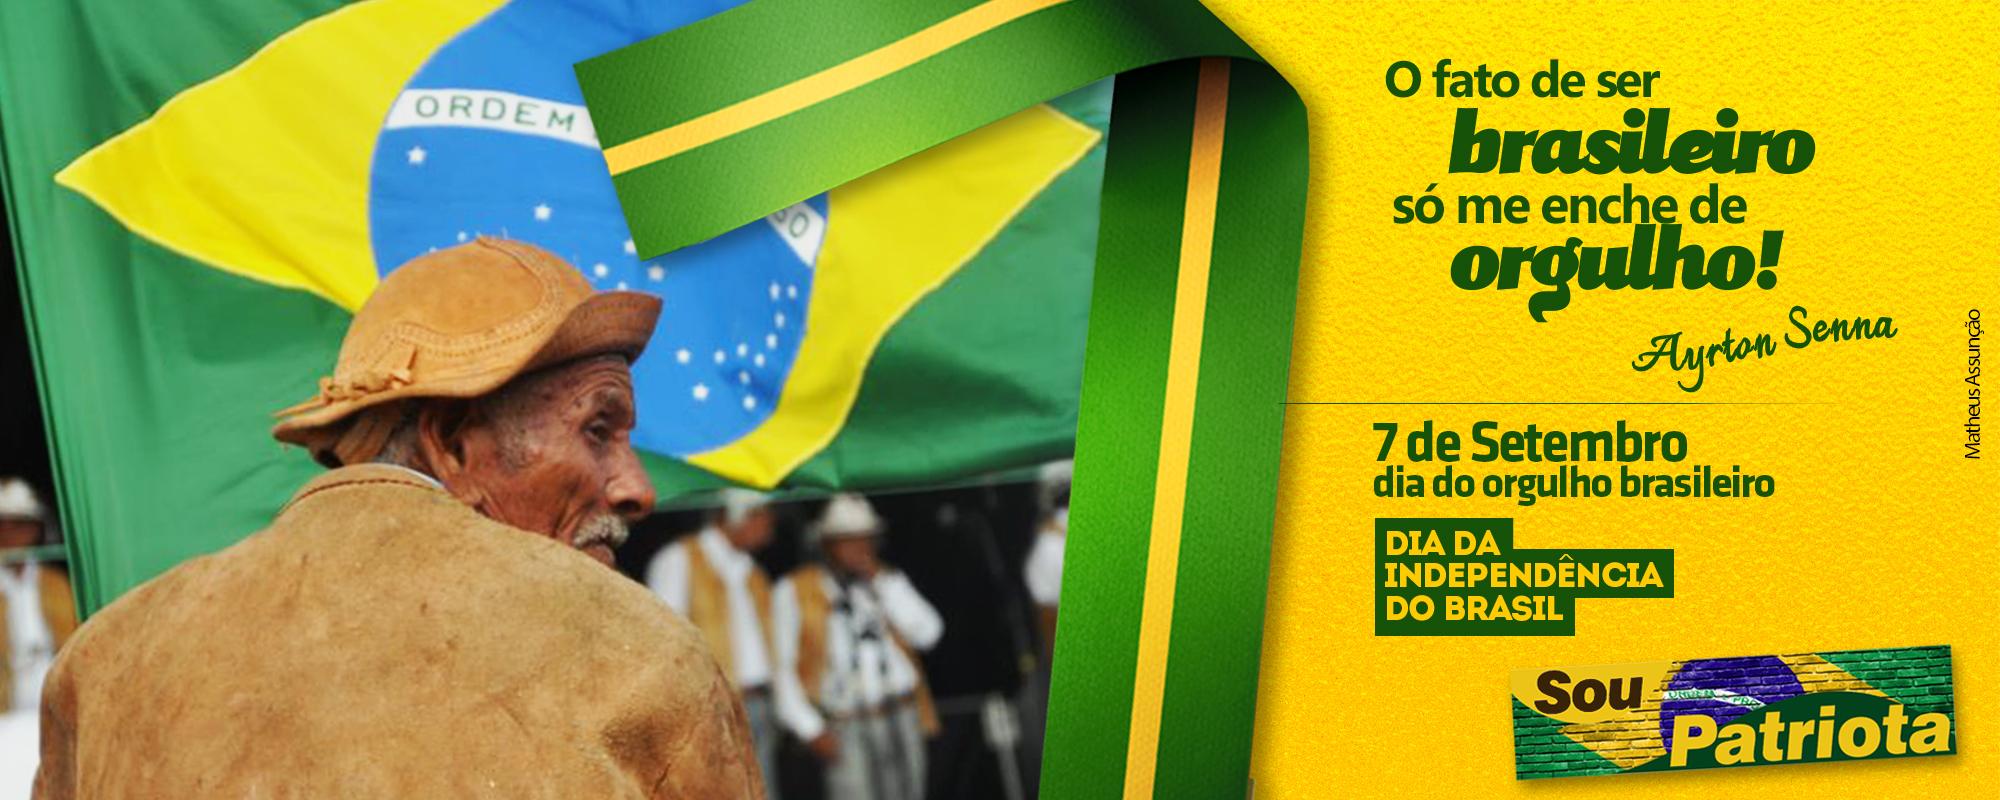 7 de Setembro – Dia da Independência do Brasil – Gonzaga Patriota